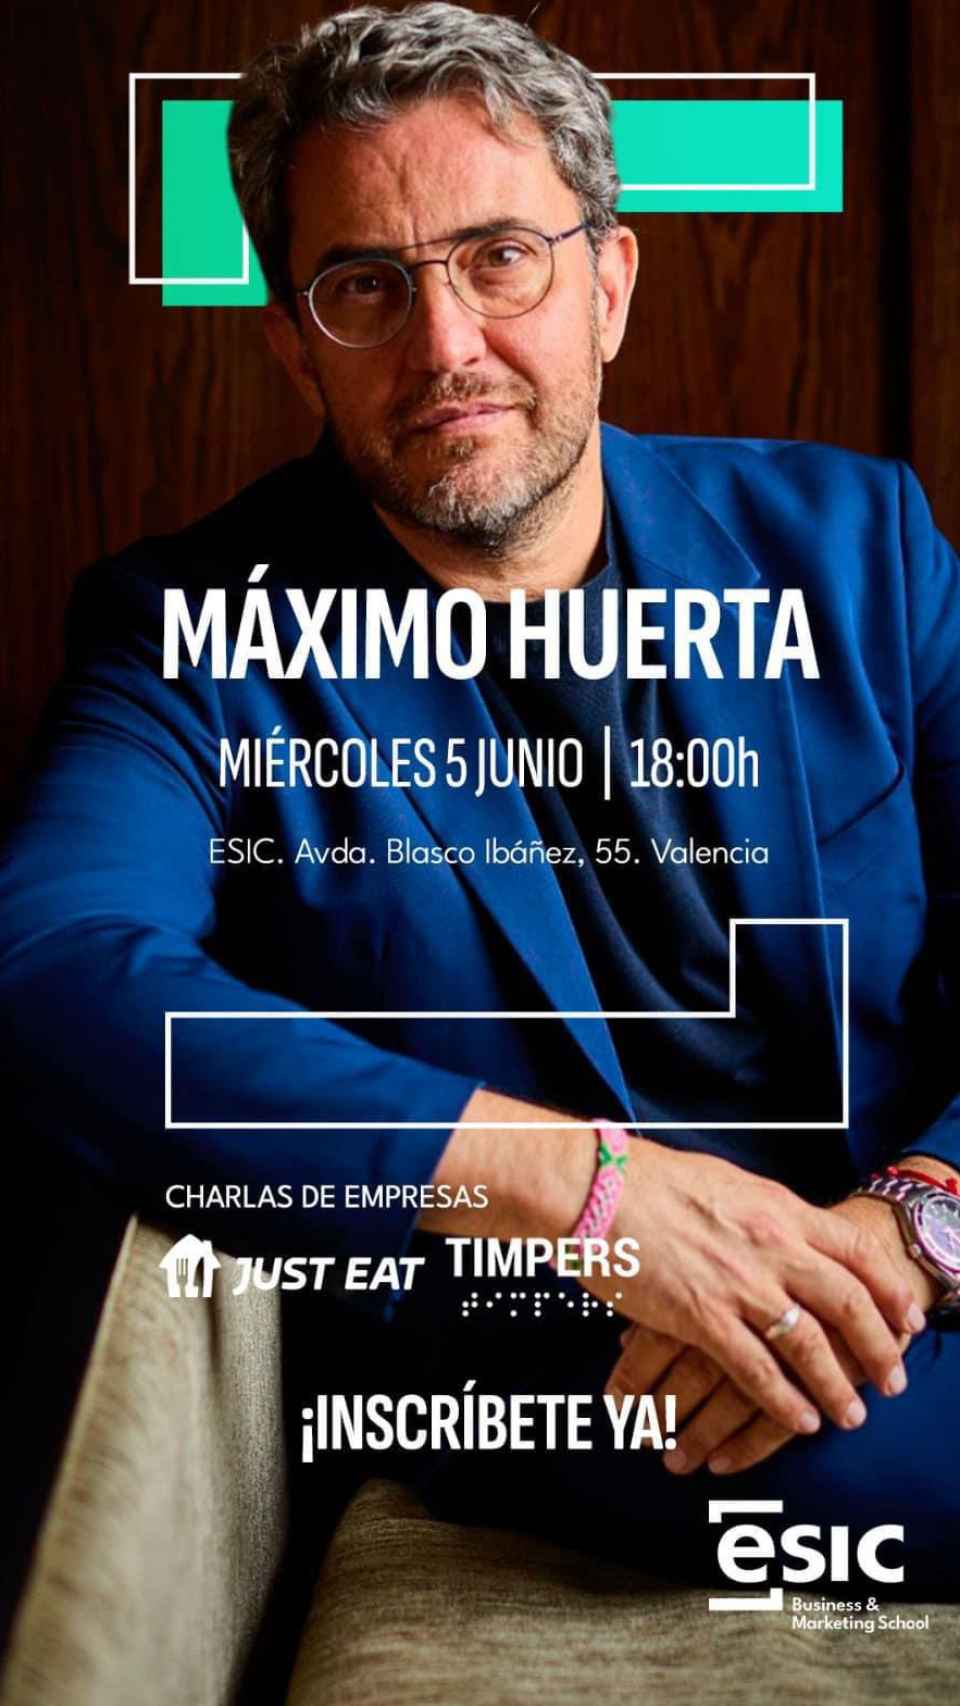 Imagen promocional de la ponencia de Máximo Huerta organizada por el ESIC.